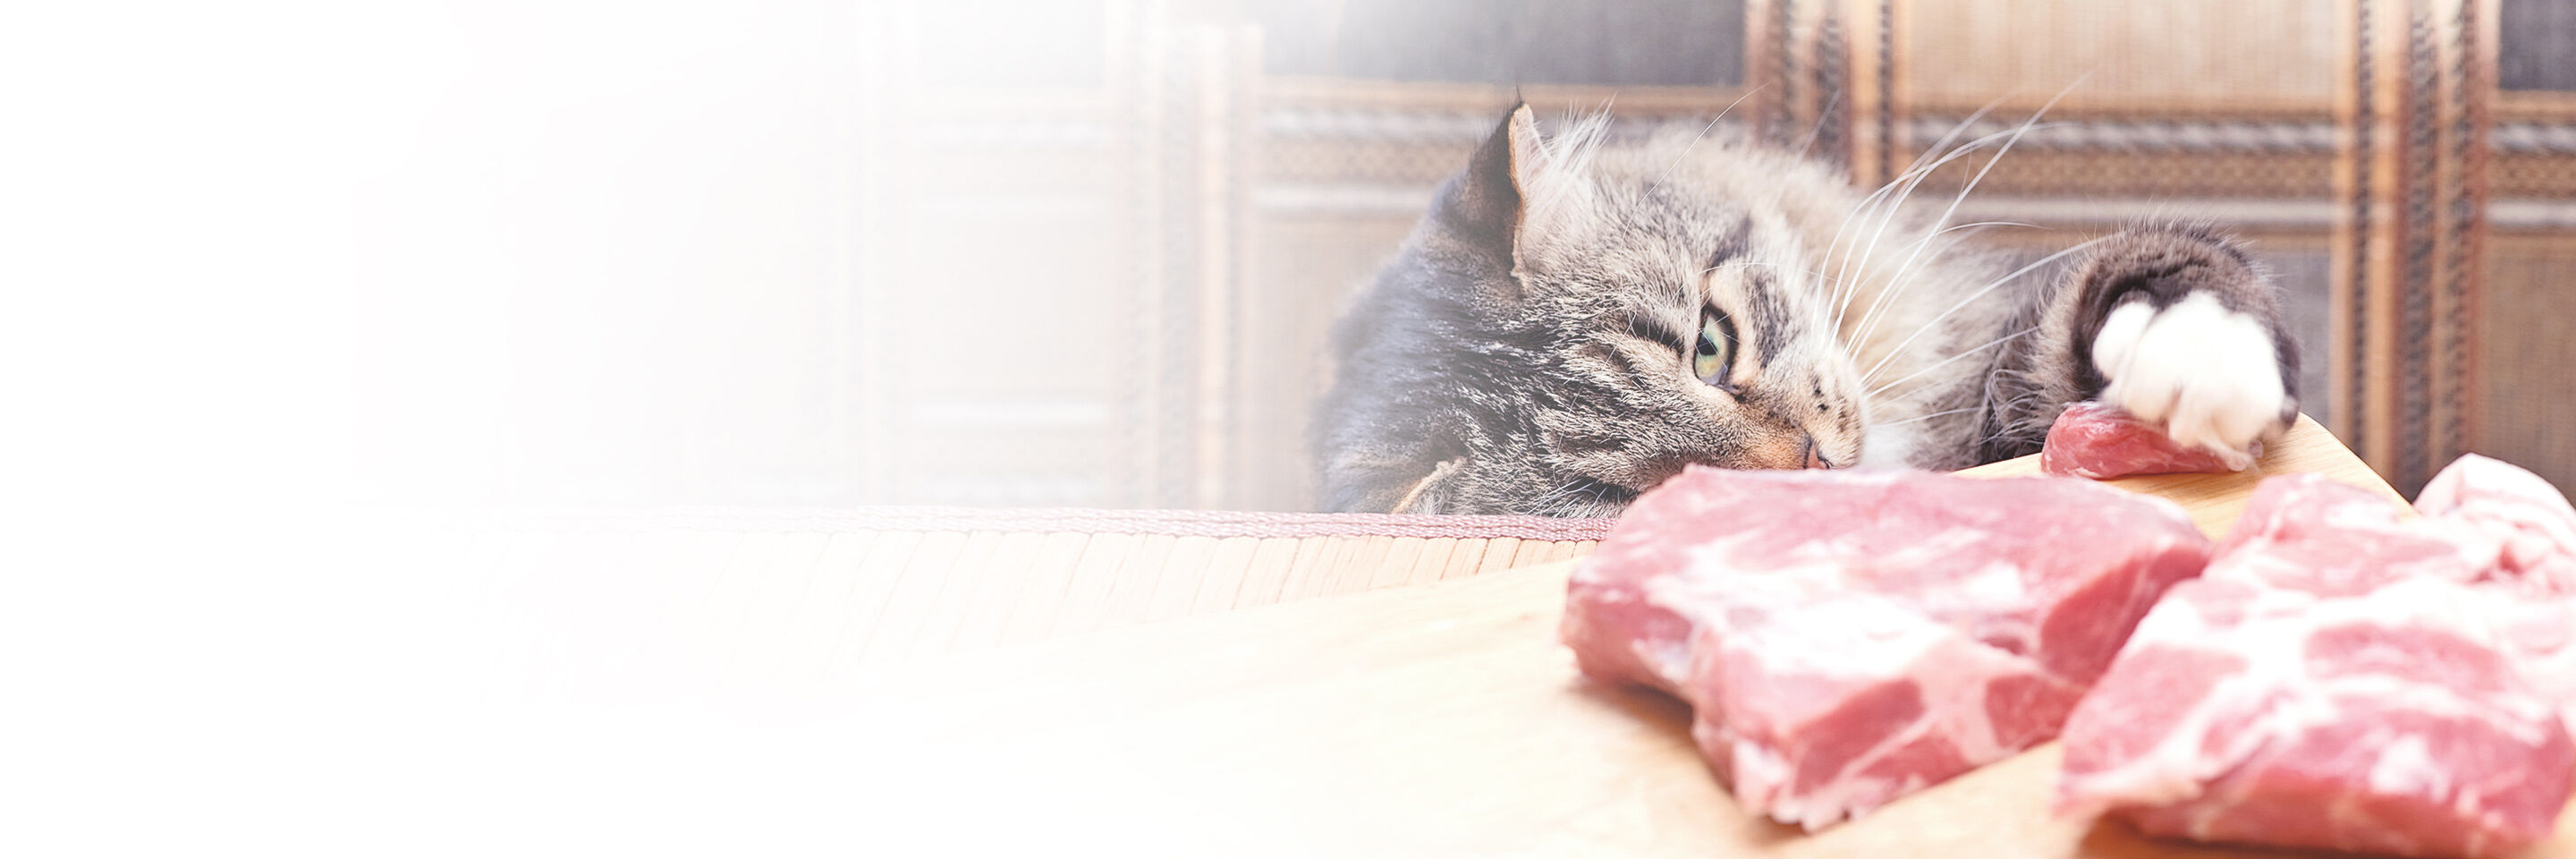 Frisches rohes Fleisch liegt auf dem Tisch und eine Katze nähert sich vorsichtig dem Fleisch mit ihrer Tatze